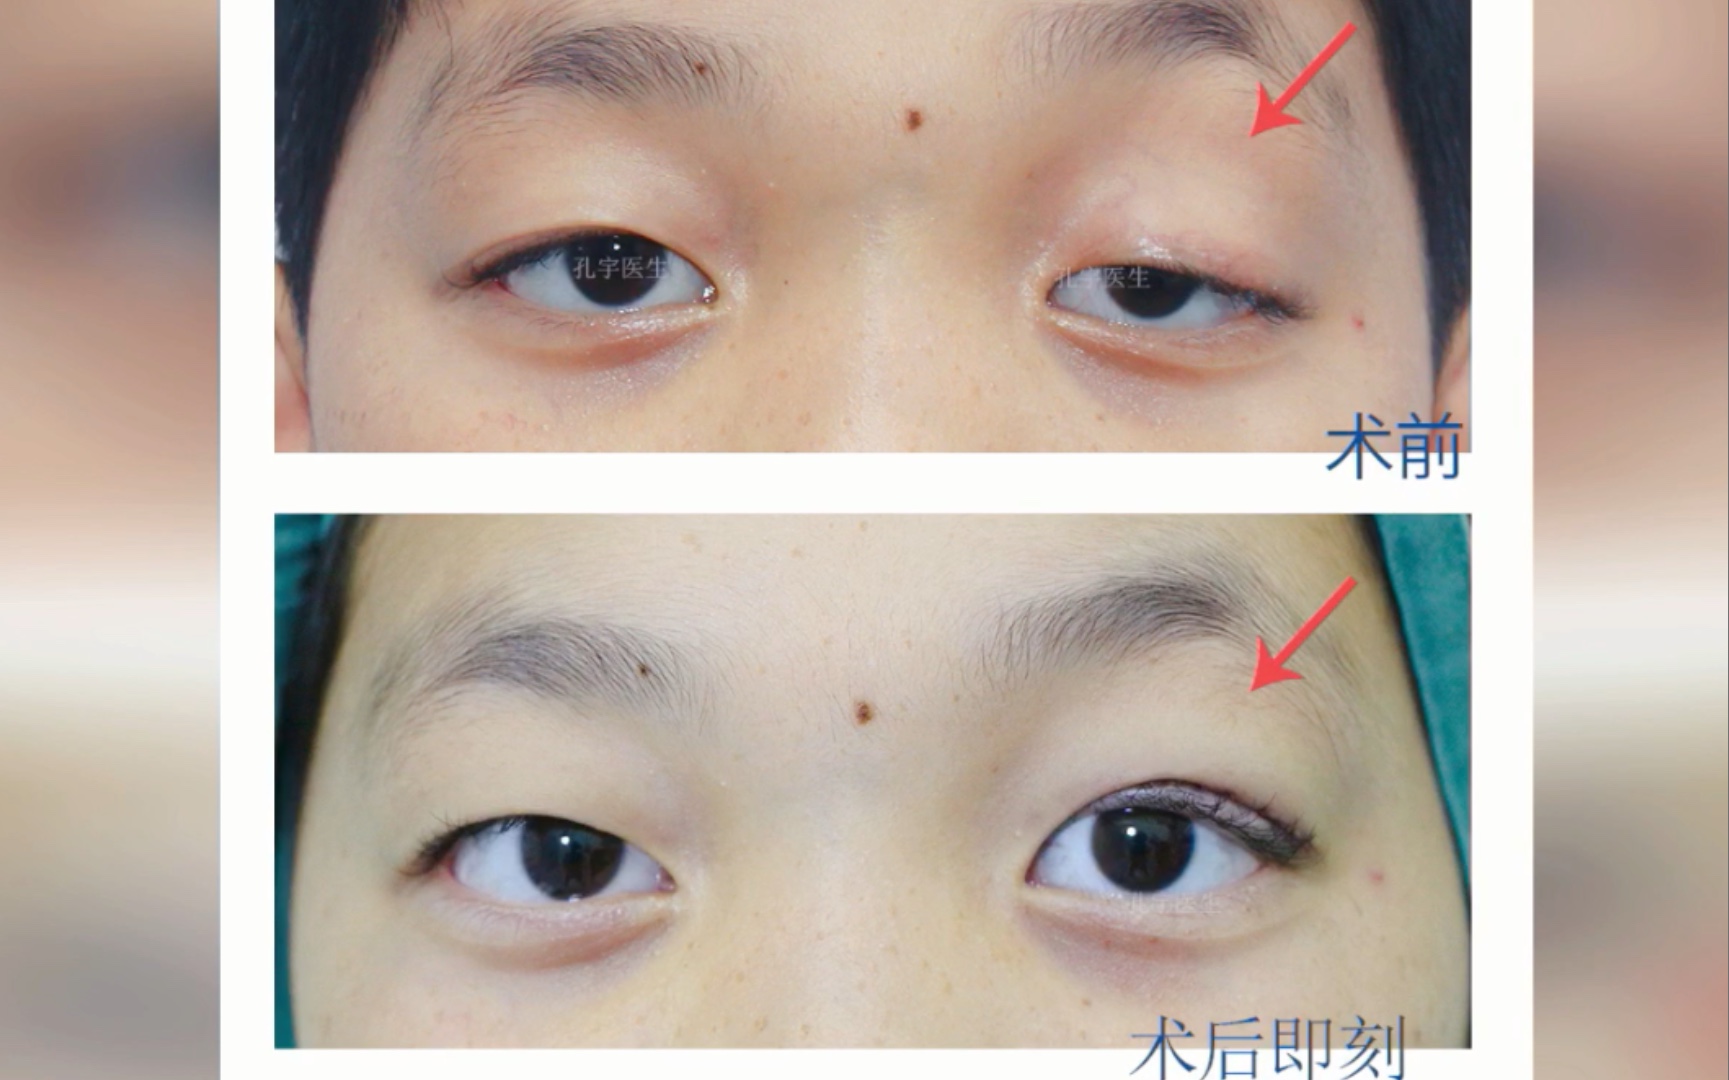 单侧重度眼睑下垂矫正分享11岁小伙子左眼先天性上睑下垂矫正后双眼